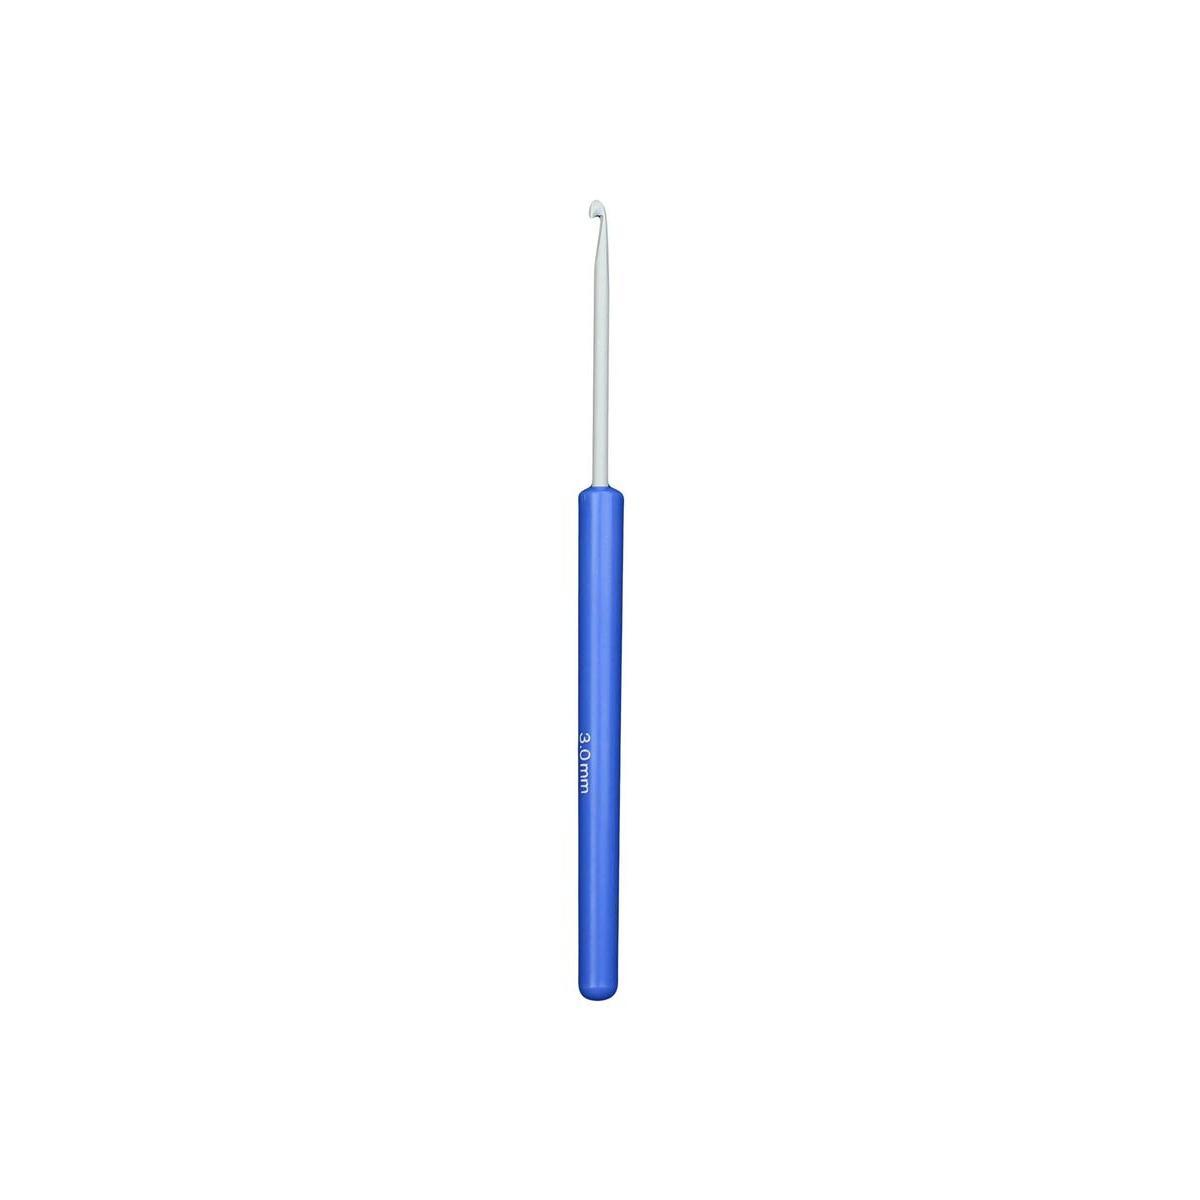 Crochet - Acier et plastique - 14 cm - Bleu